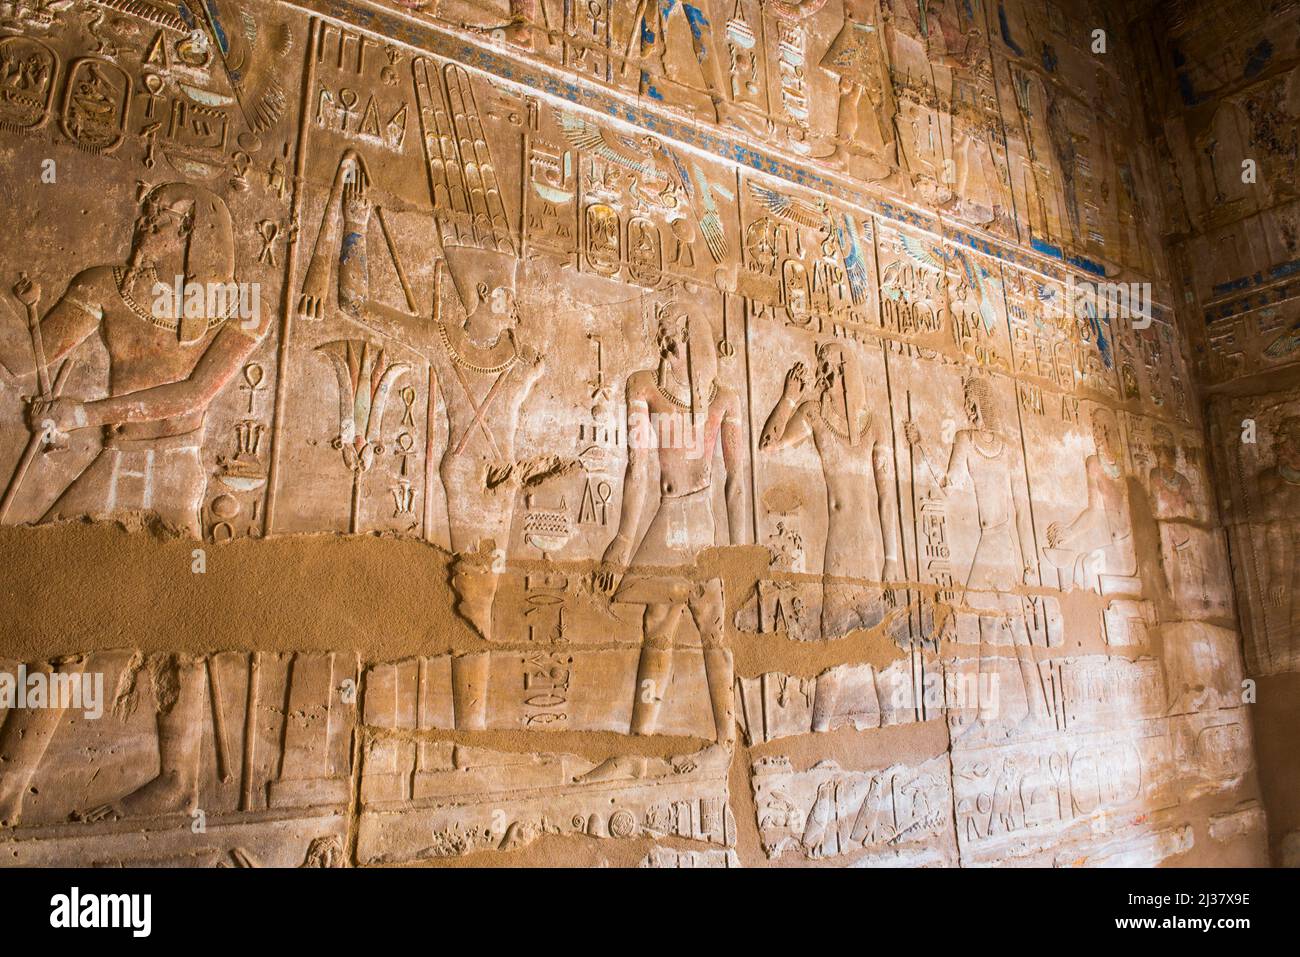 Inscripciones y jeroglíficos en las paredes del Precinto de Amon-Ra, Complejo del Templo de Karnak, Luxor, Egipto, Noreste de África. Foto de stock